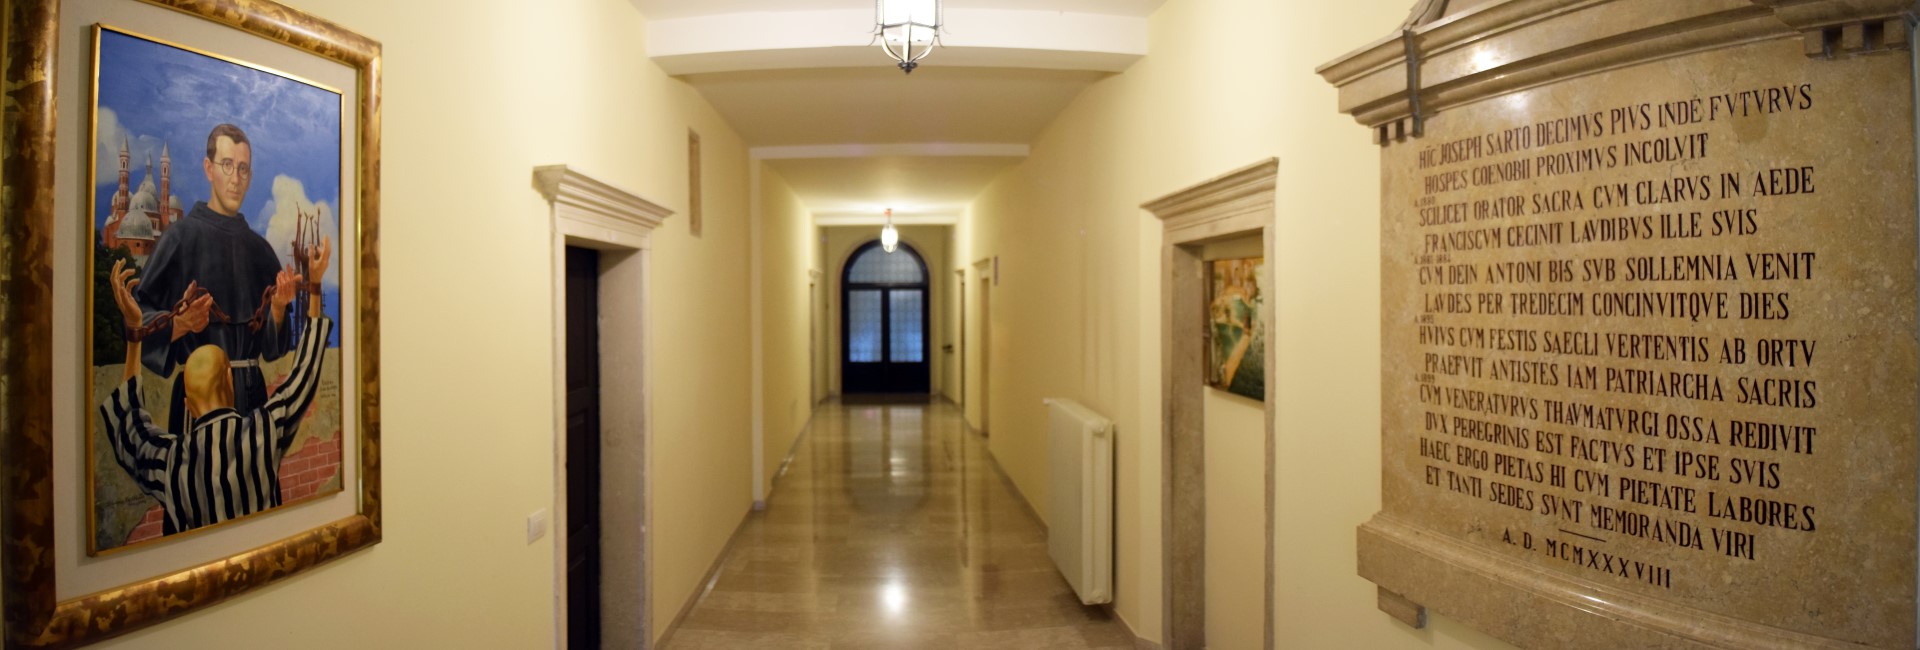 Corridoio San Pio X